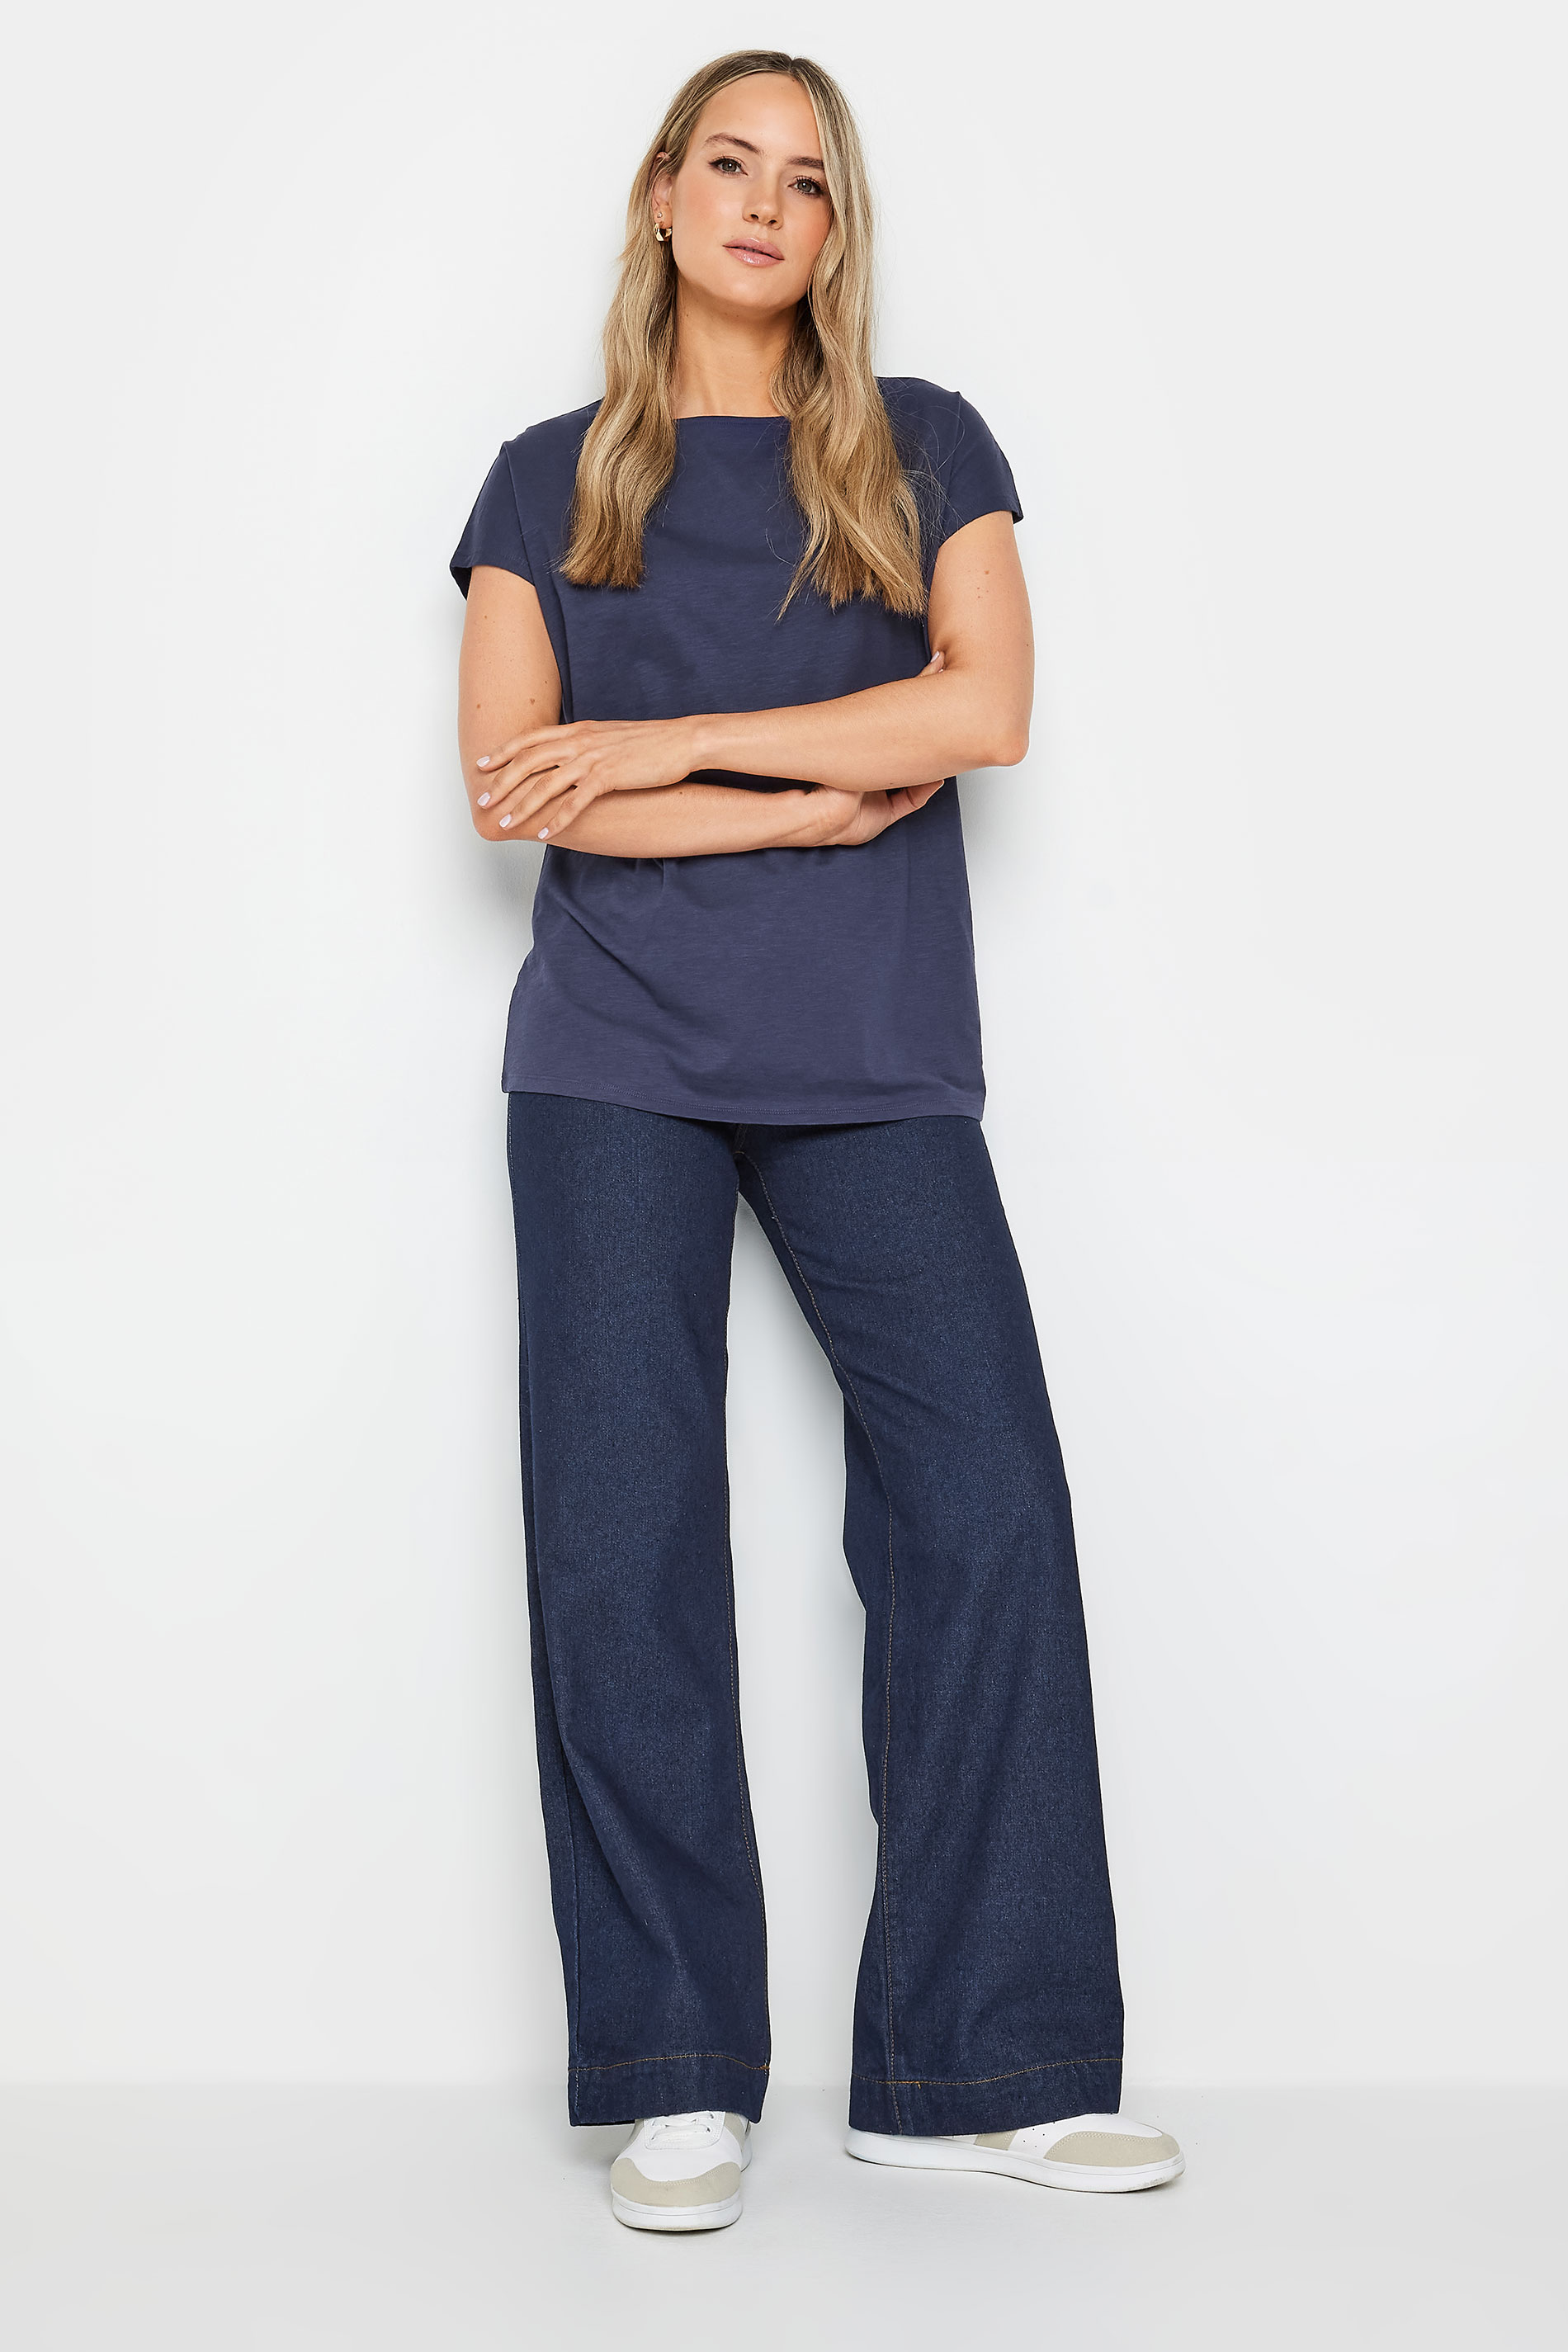 LTS Tall Womens Dark Blue Short Sleeve T-Shirt | Long Tall Sally 2